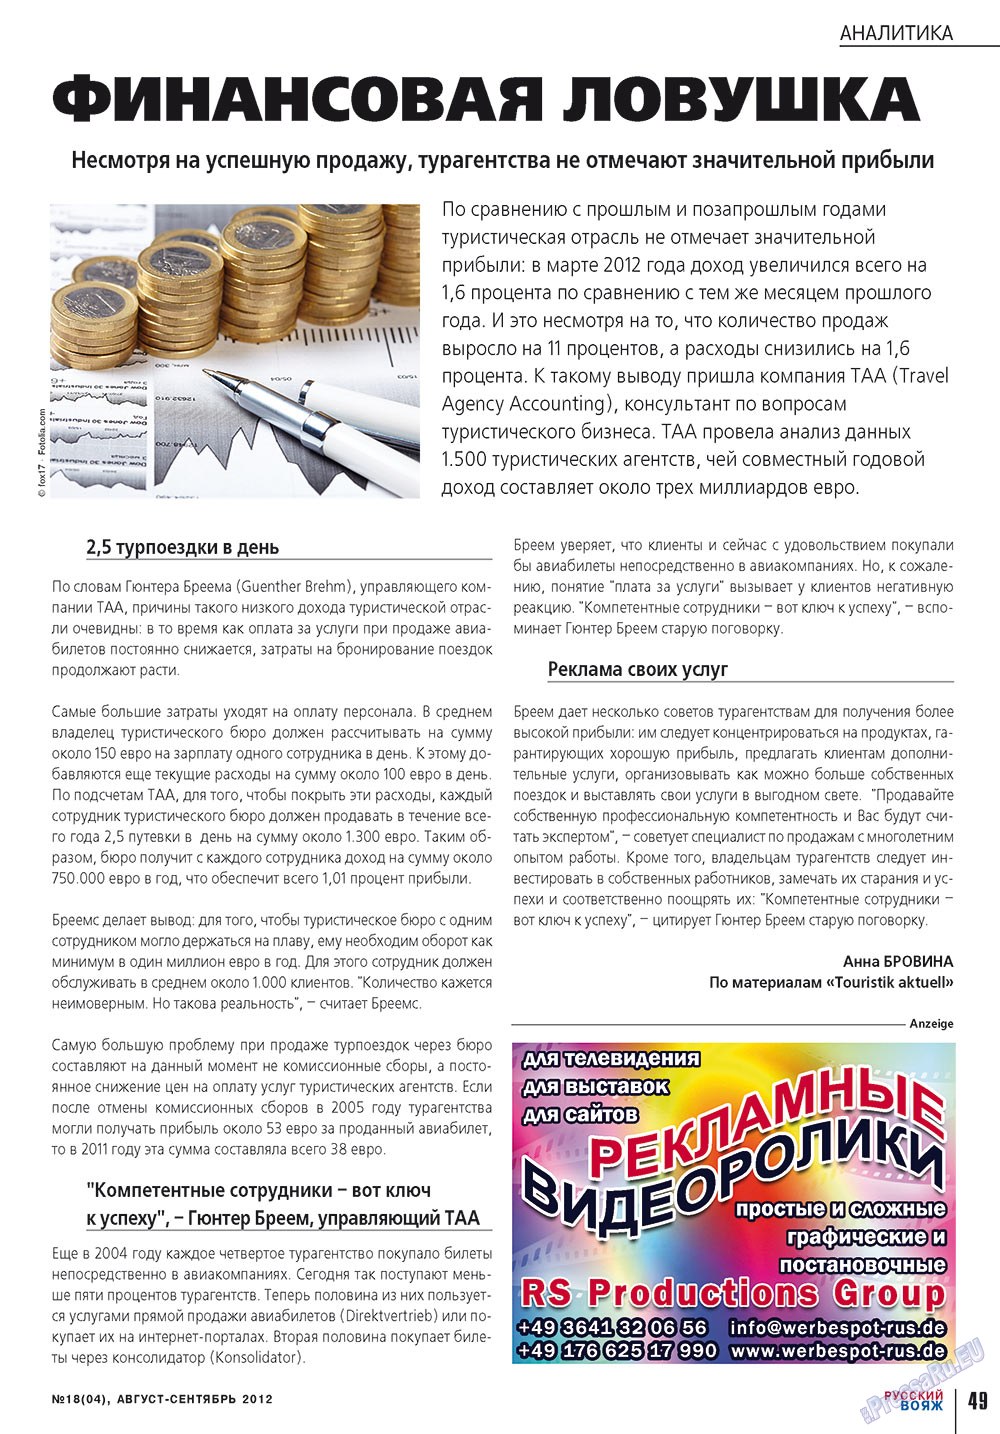 Русский вояж (журнал). 2012 год, номер 18, стр. 49